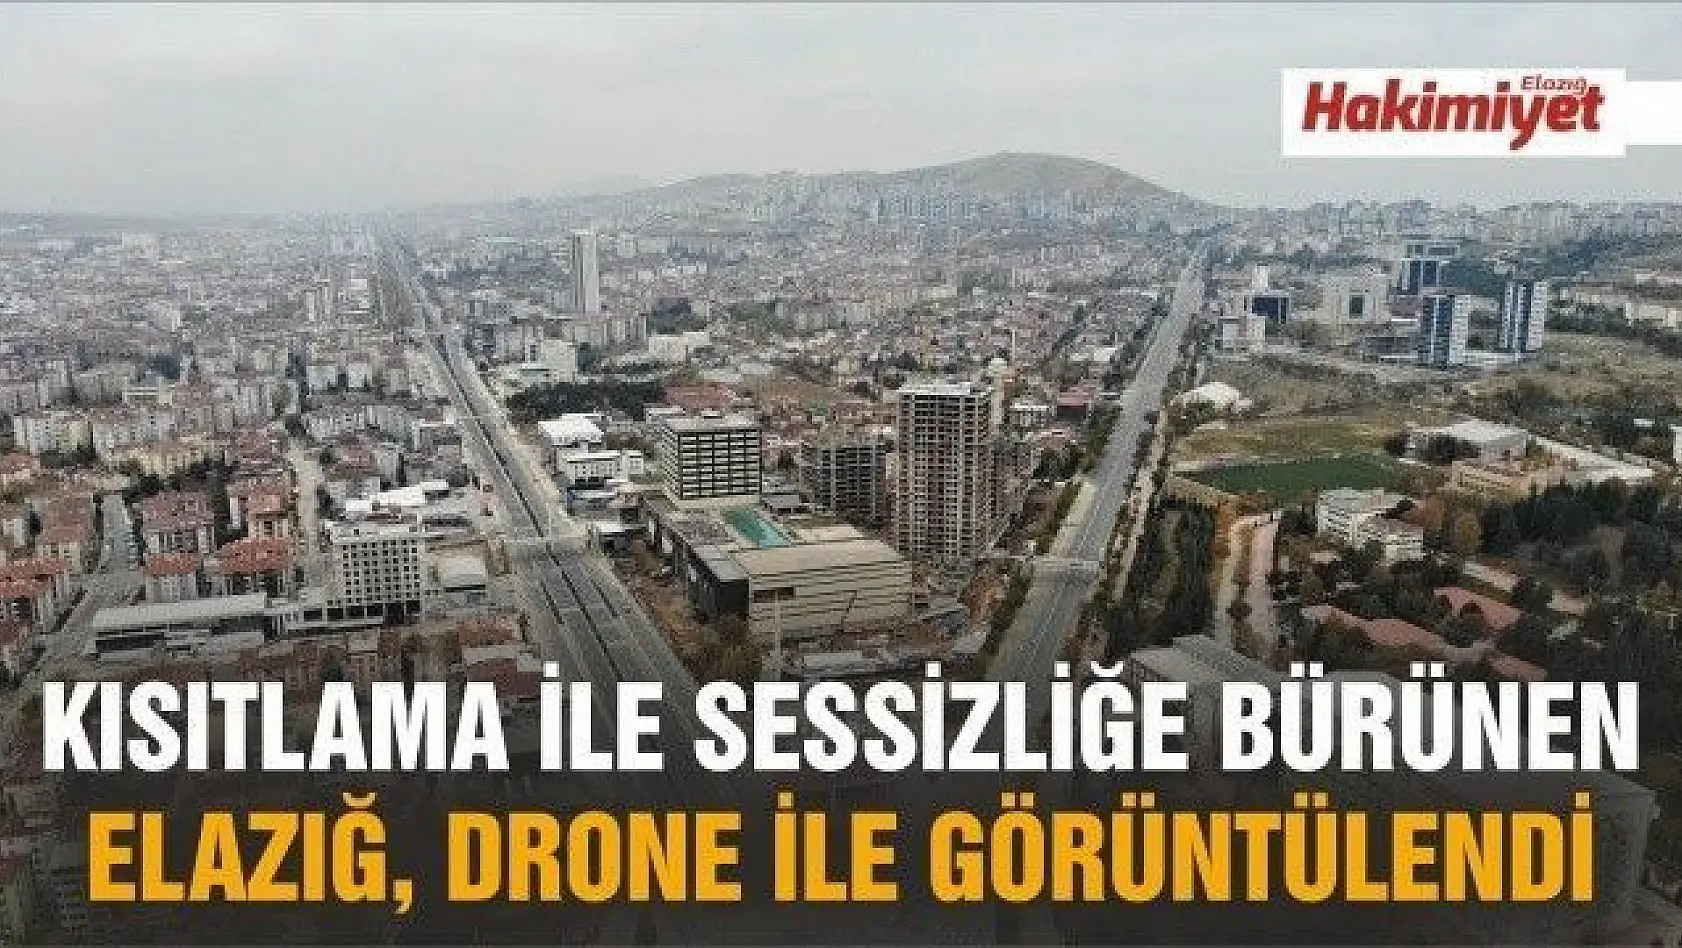 Kısıtlama ile sessizliğe bürünen Elazığ, drone ile görüntülendi